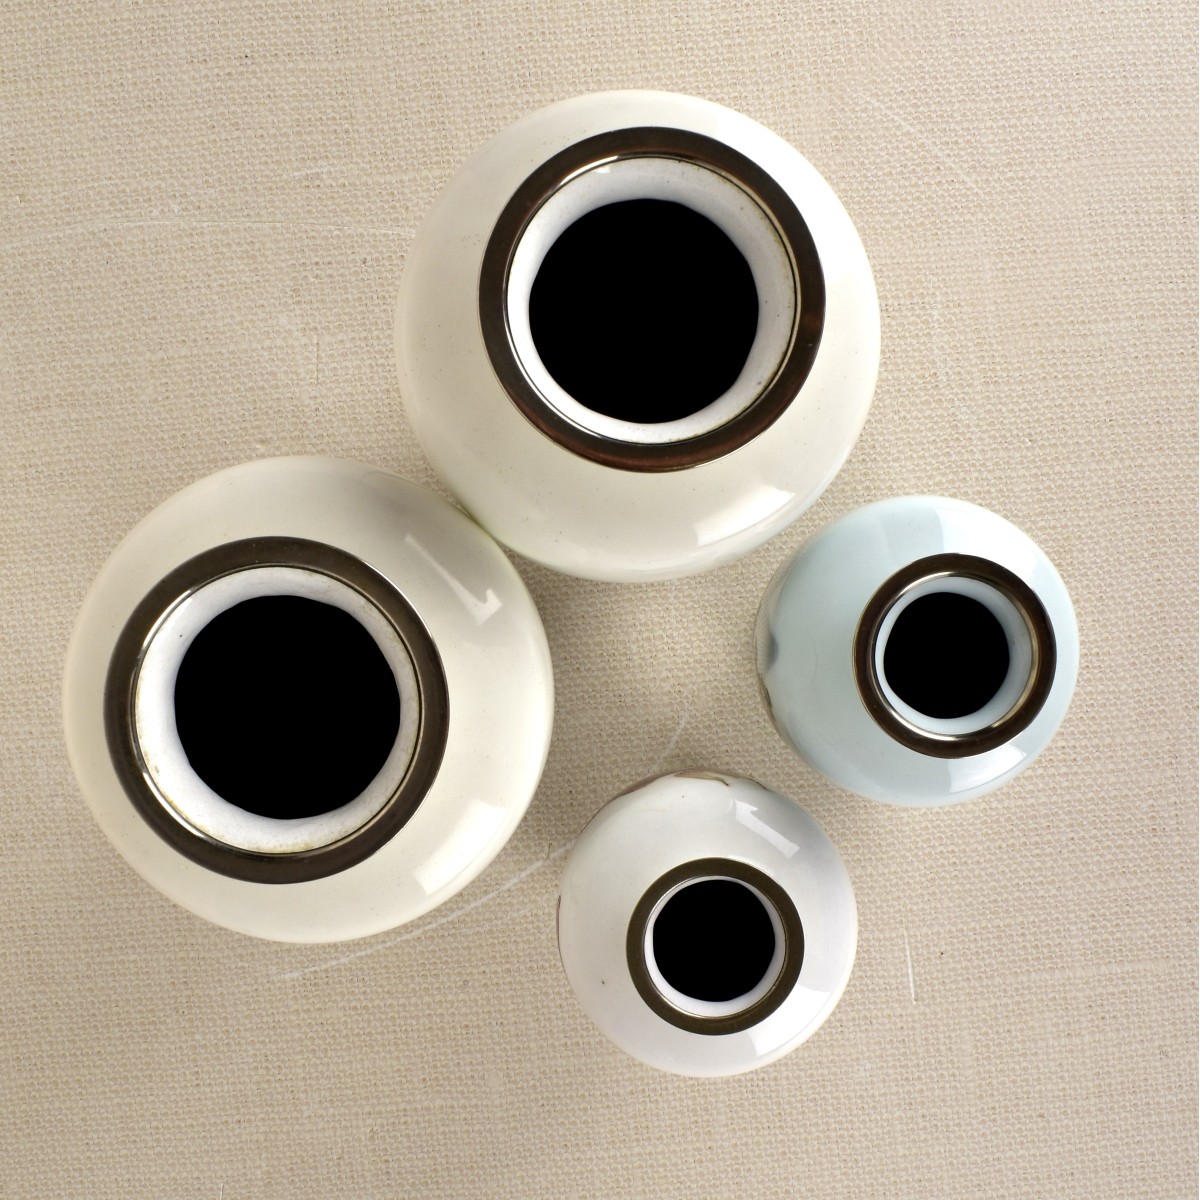 Four (4) Japanese Cloisonne Vases